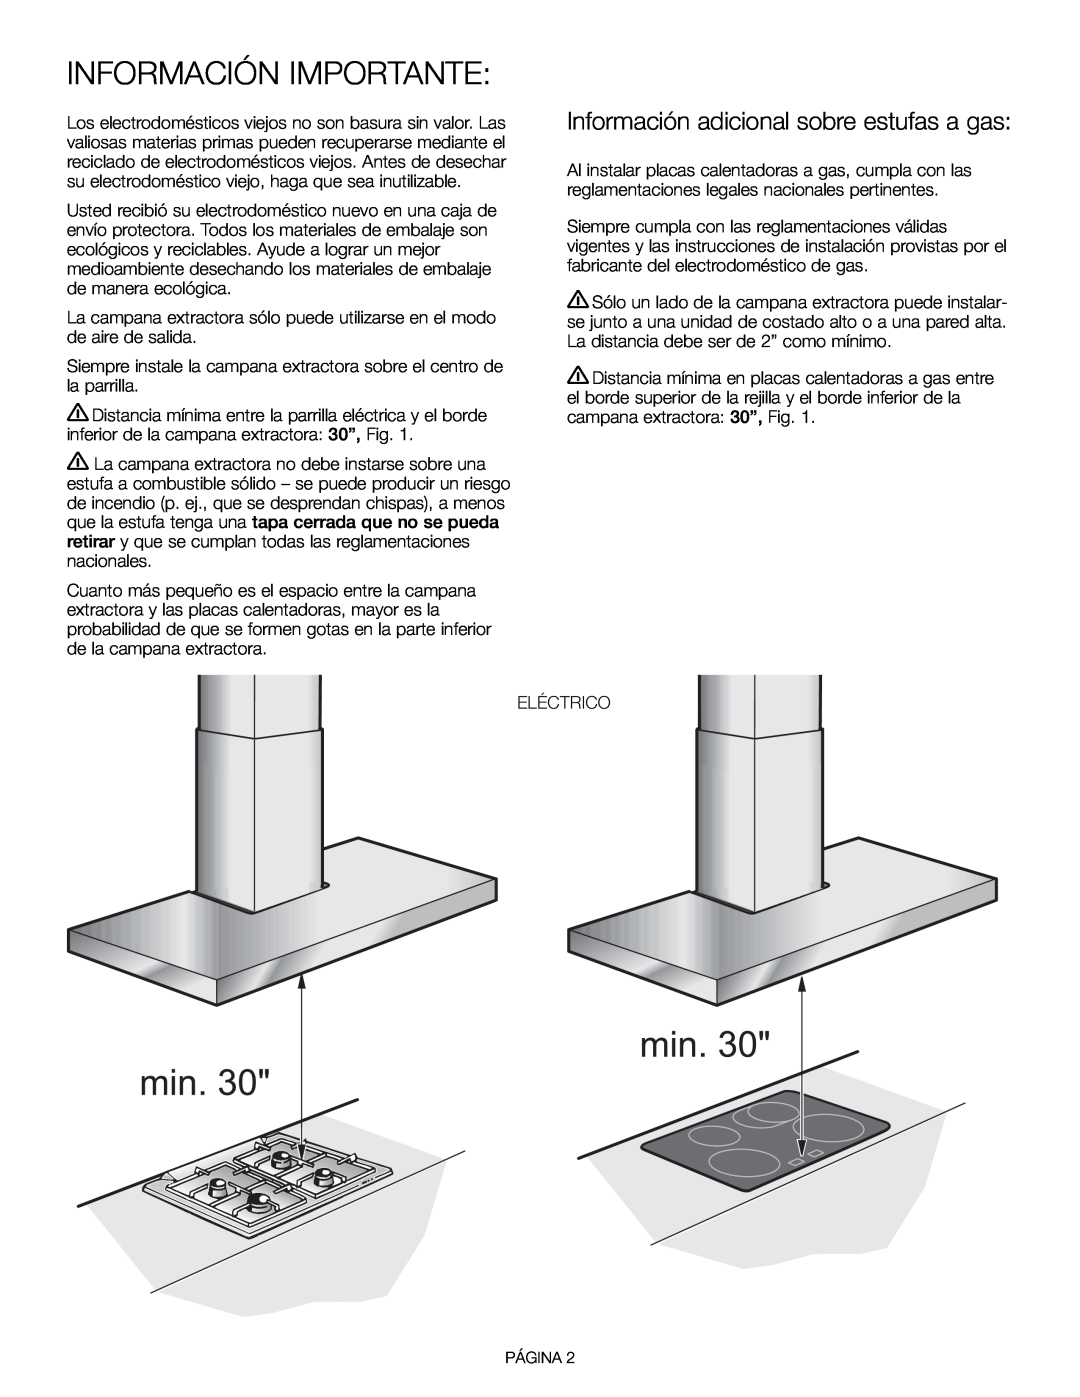 Thermador HDDW36FS installation manual Información Importante, Información adicional sobre estufas a gas 